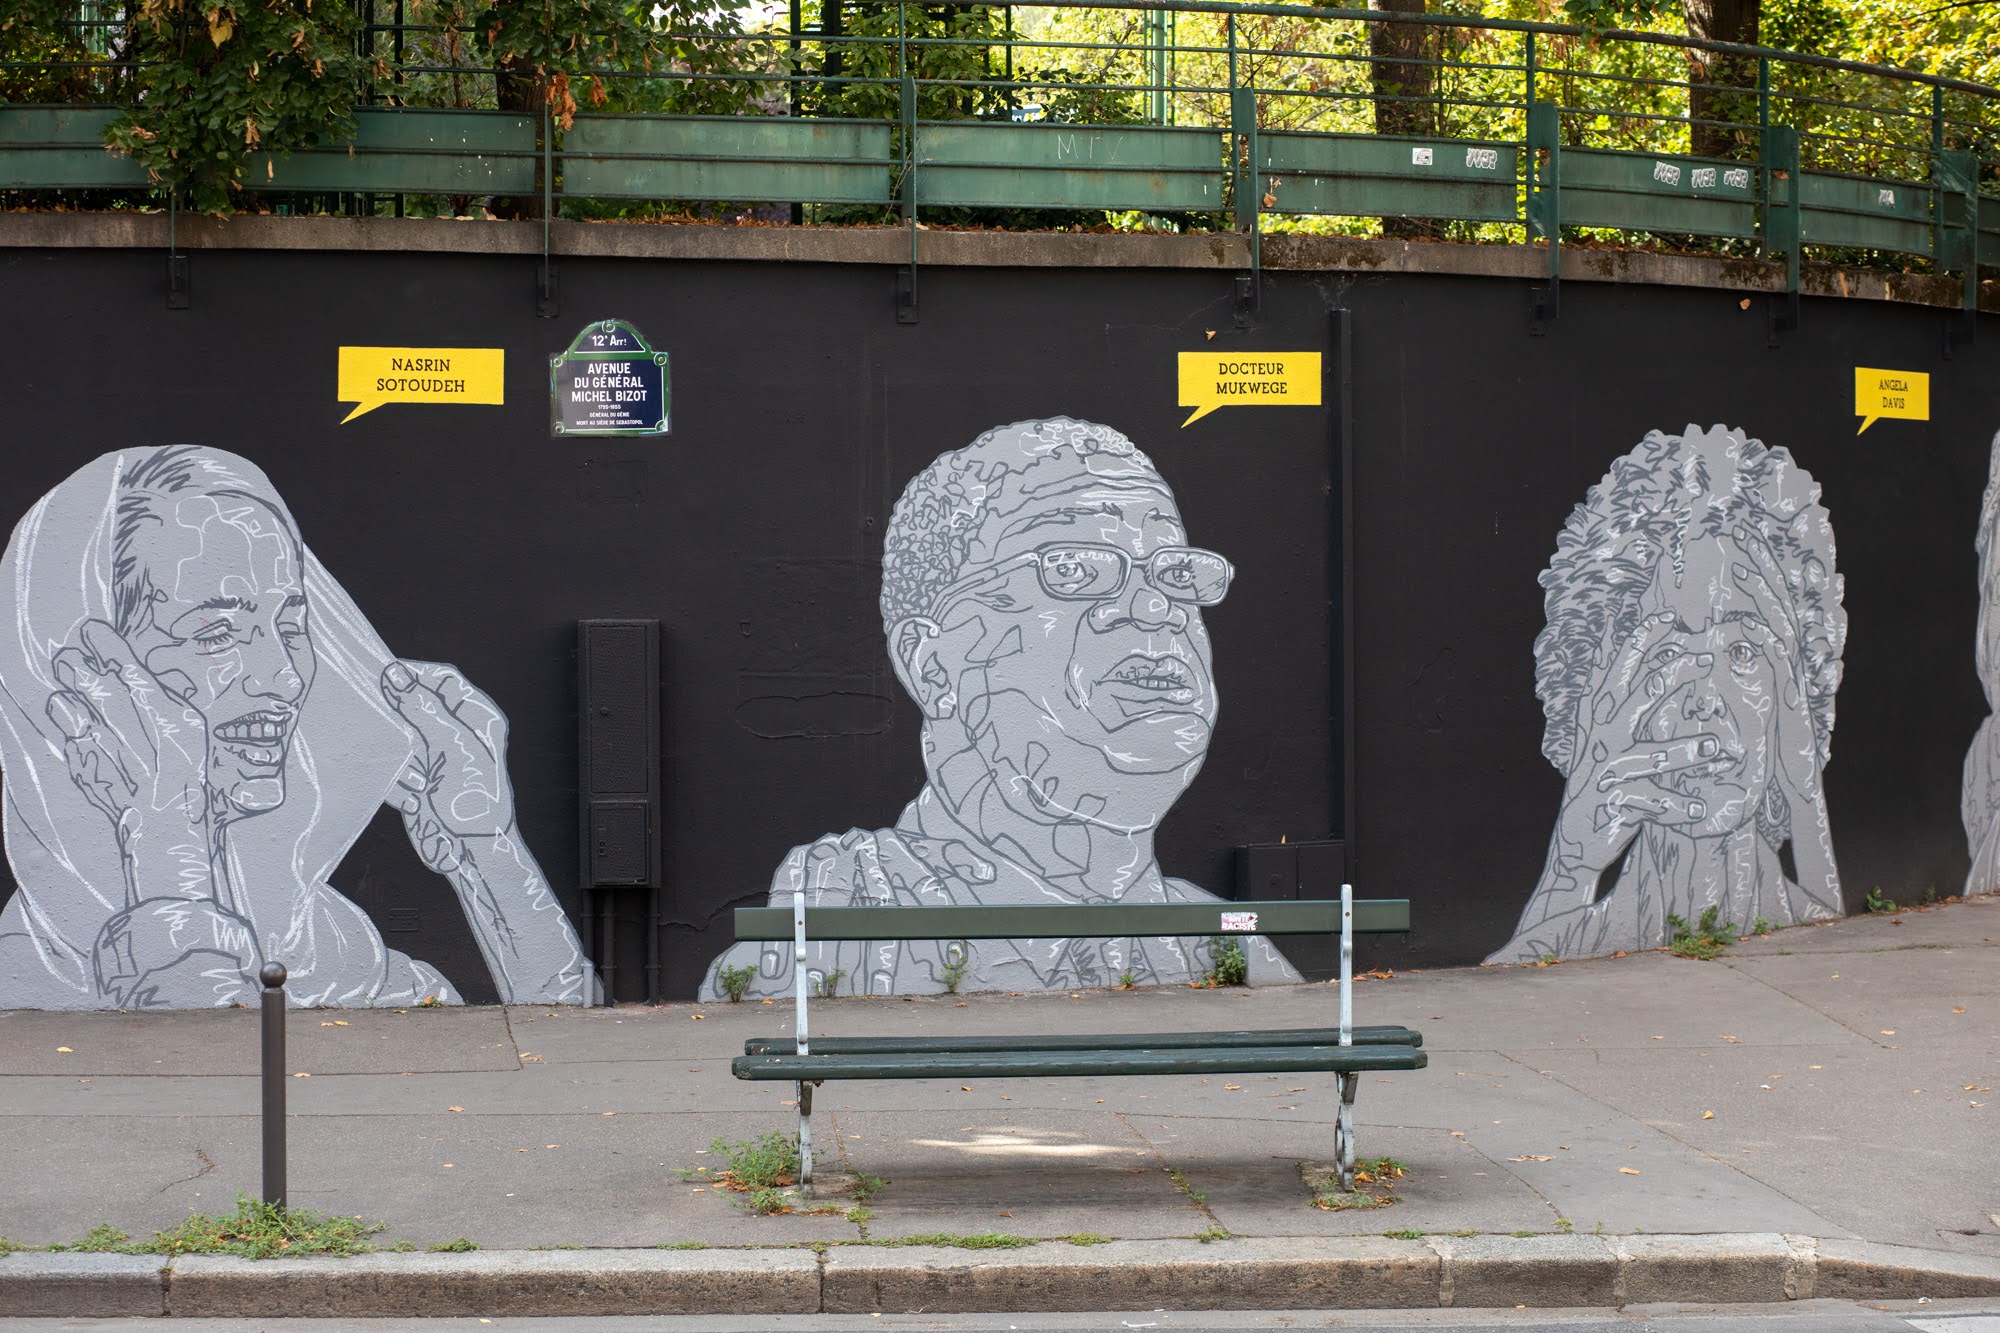 Nasrin Sotoudeh et Docteur Mukwege représentés sur le Mur des droits humains, une oeuvre du street artiste Mahn Kloix - Rue du Sahel (12e) 